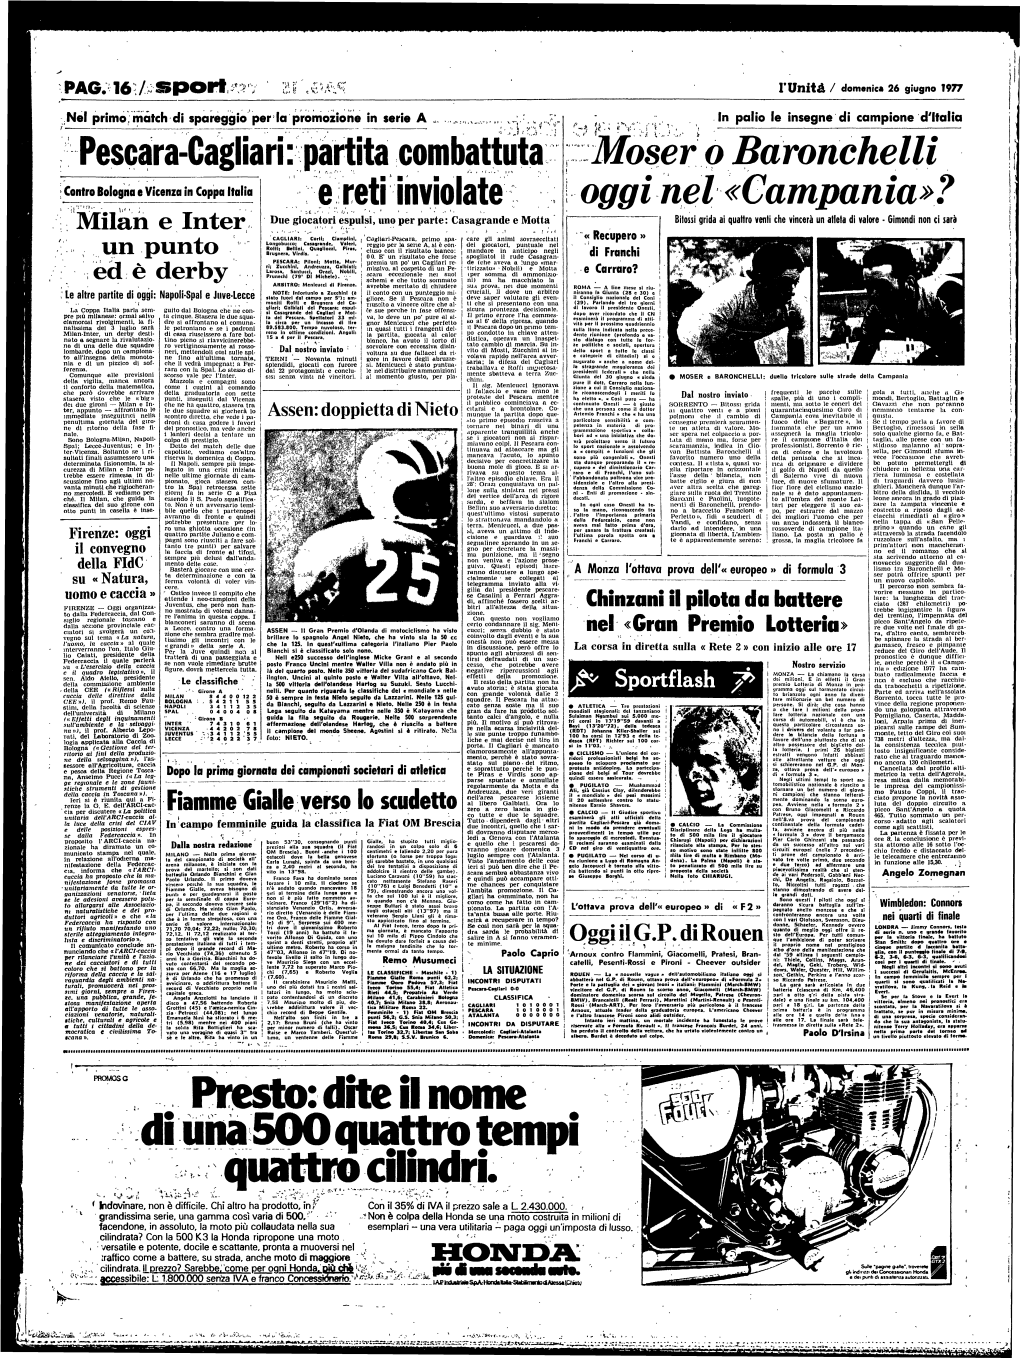 PAG. 16/ Spori R.T^P Lv Unità / Domenica 26 Giugno 1977